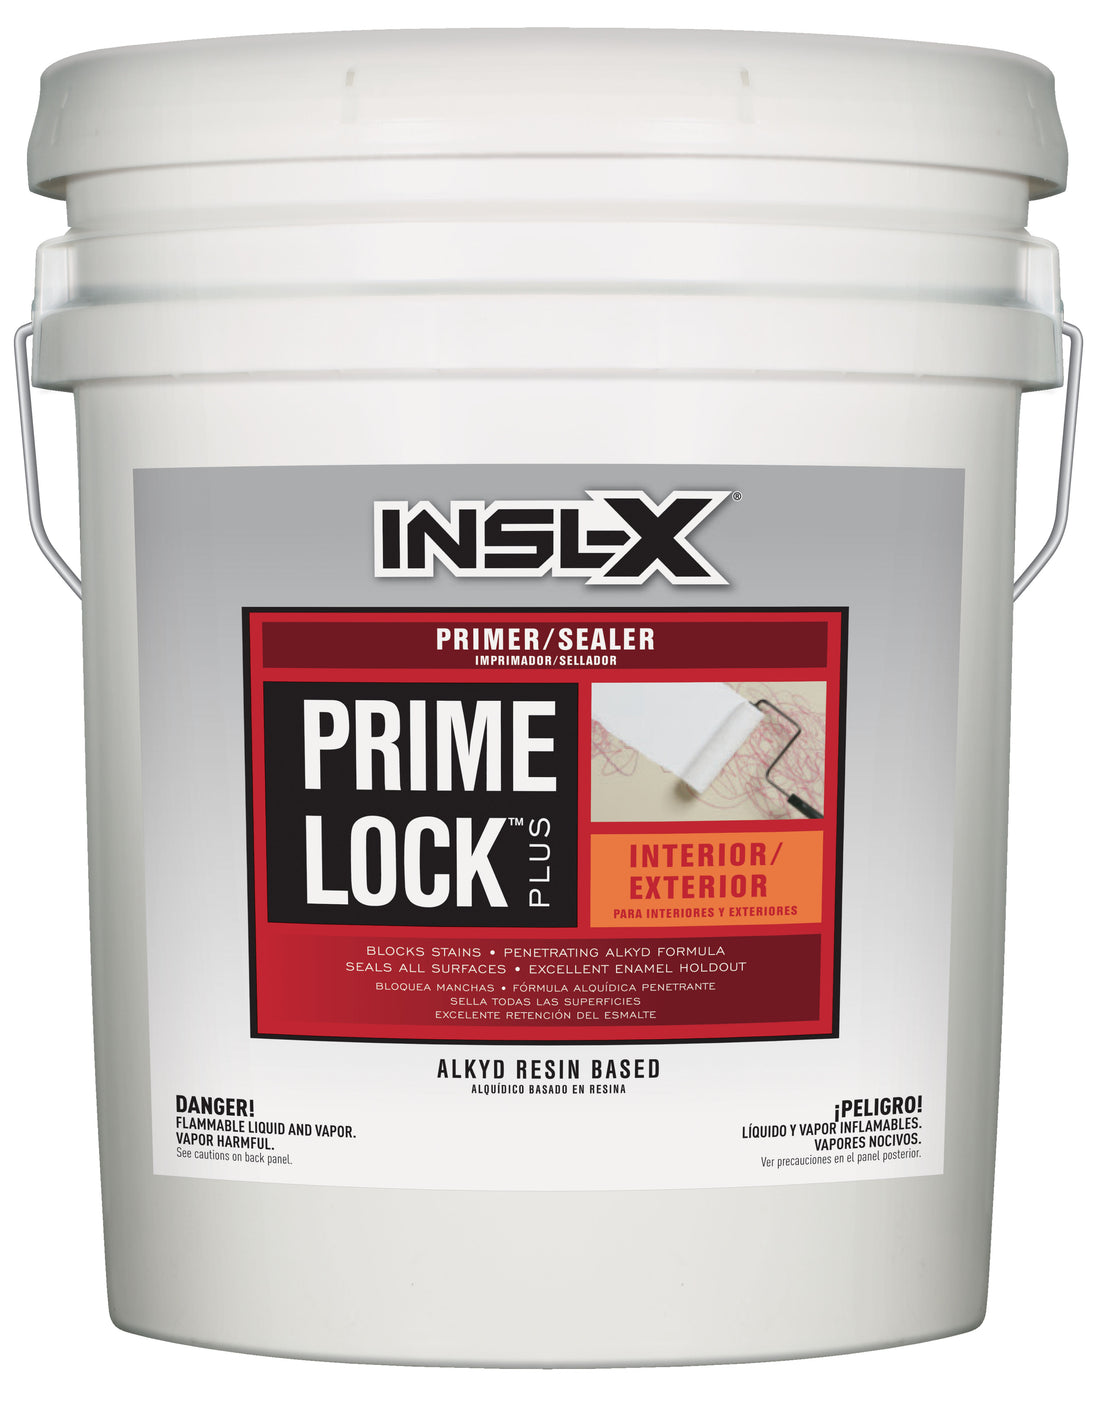 INSL-X PRIME LOCK